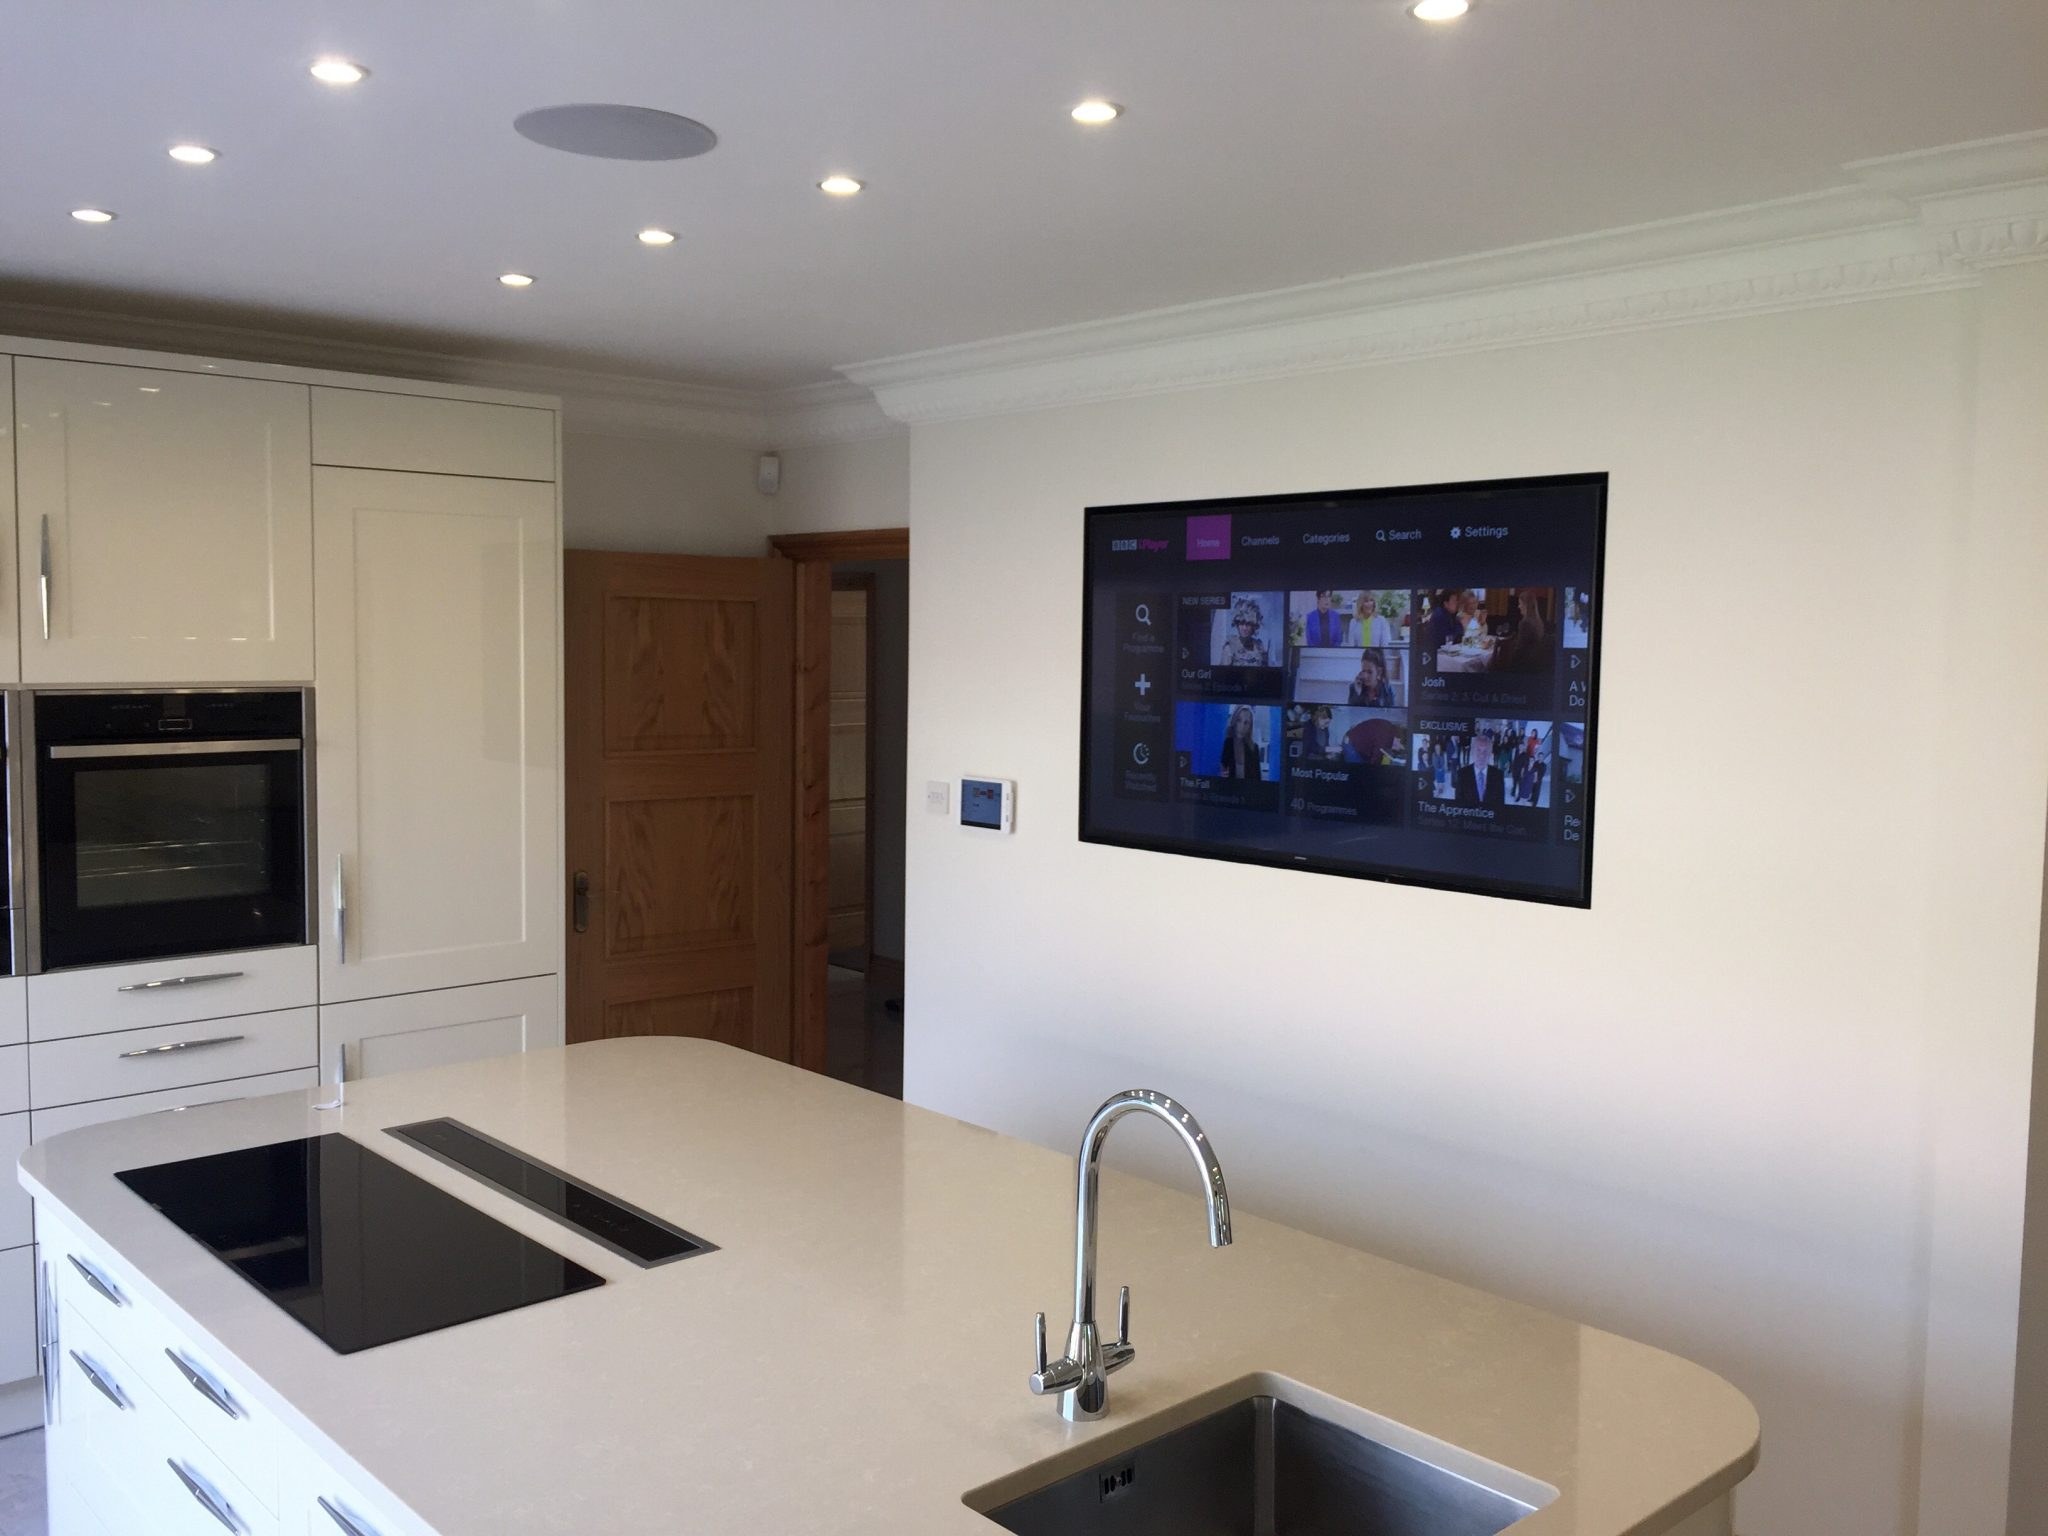 Телевизор на кухню с wifi. Кухня с телевизором на стене. Телевизор встроенный в кухню. Телевизор на кухне. Встроенный телевизор в кухонный гарнитур.